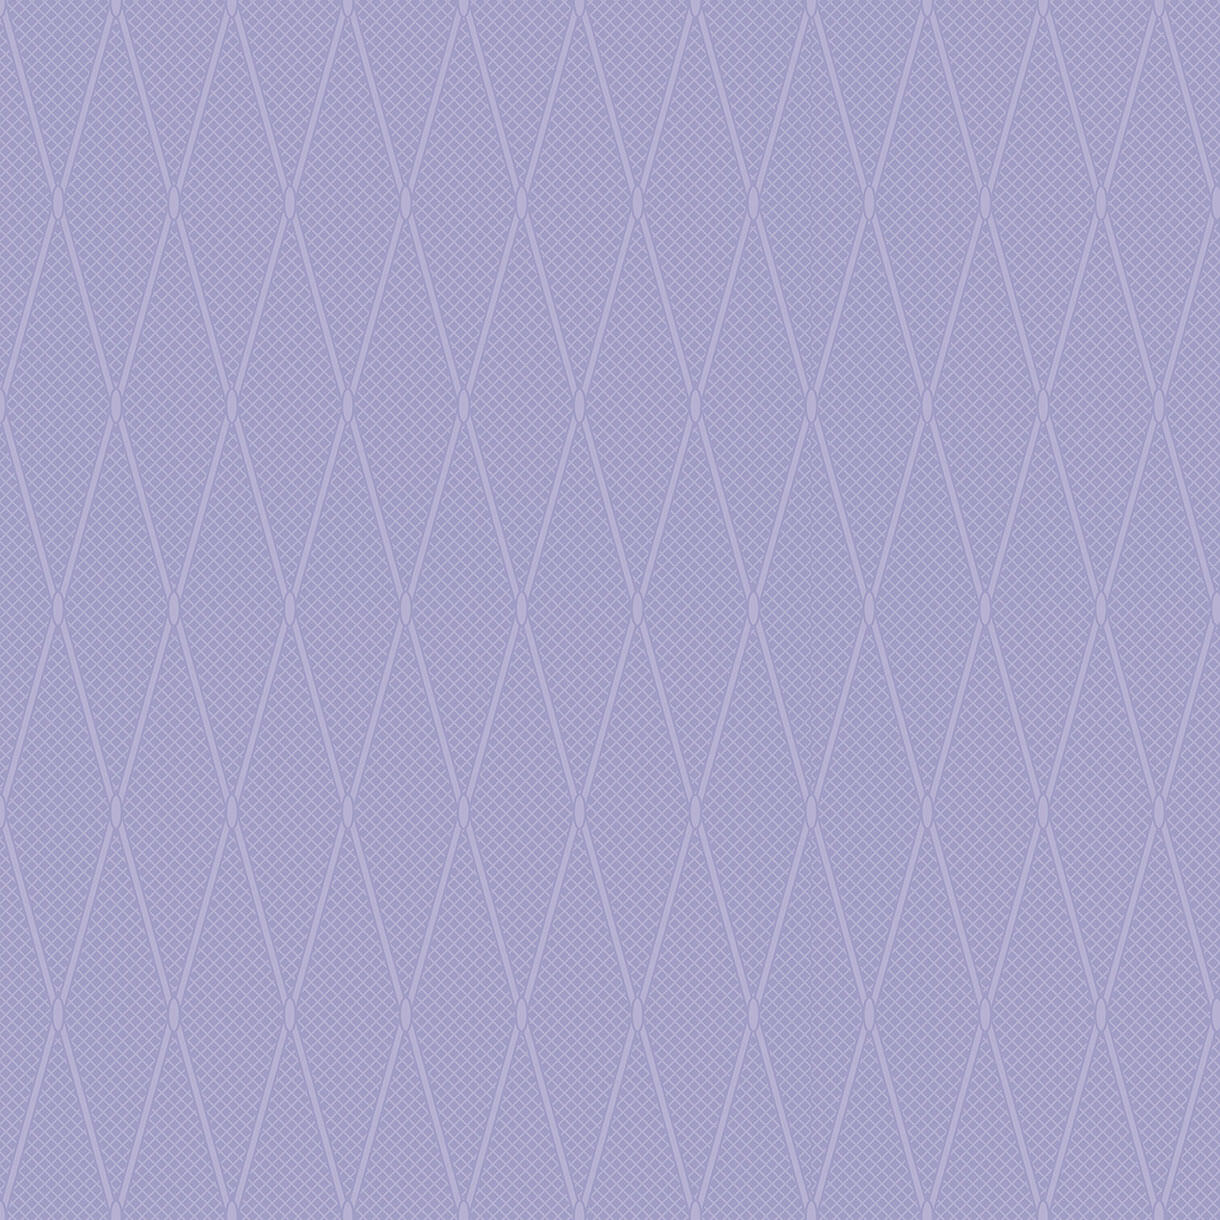 Керамическая плитка Ceramique Imperiale Плитка Напольная Сетка Кобальтовая Сиреневый 01-10-1-16-01-57-686, цвет сиреневый, поверхность глянцевая, квадрат, 385x385